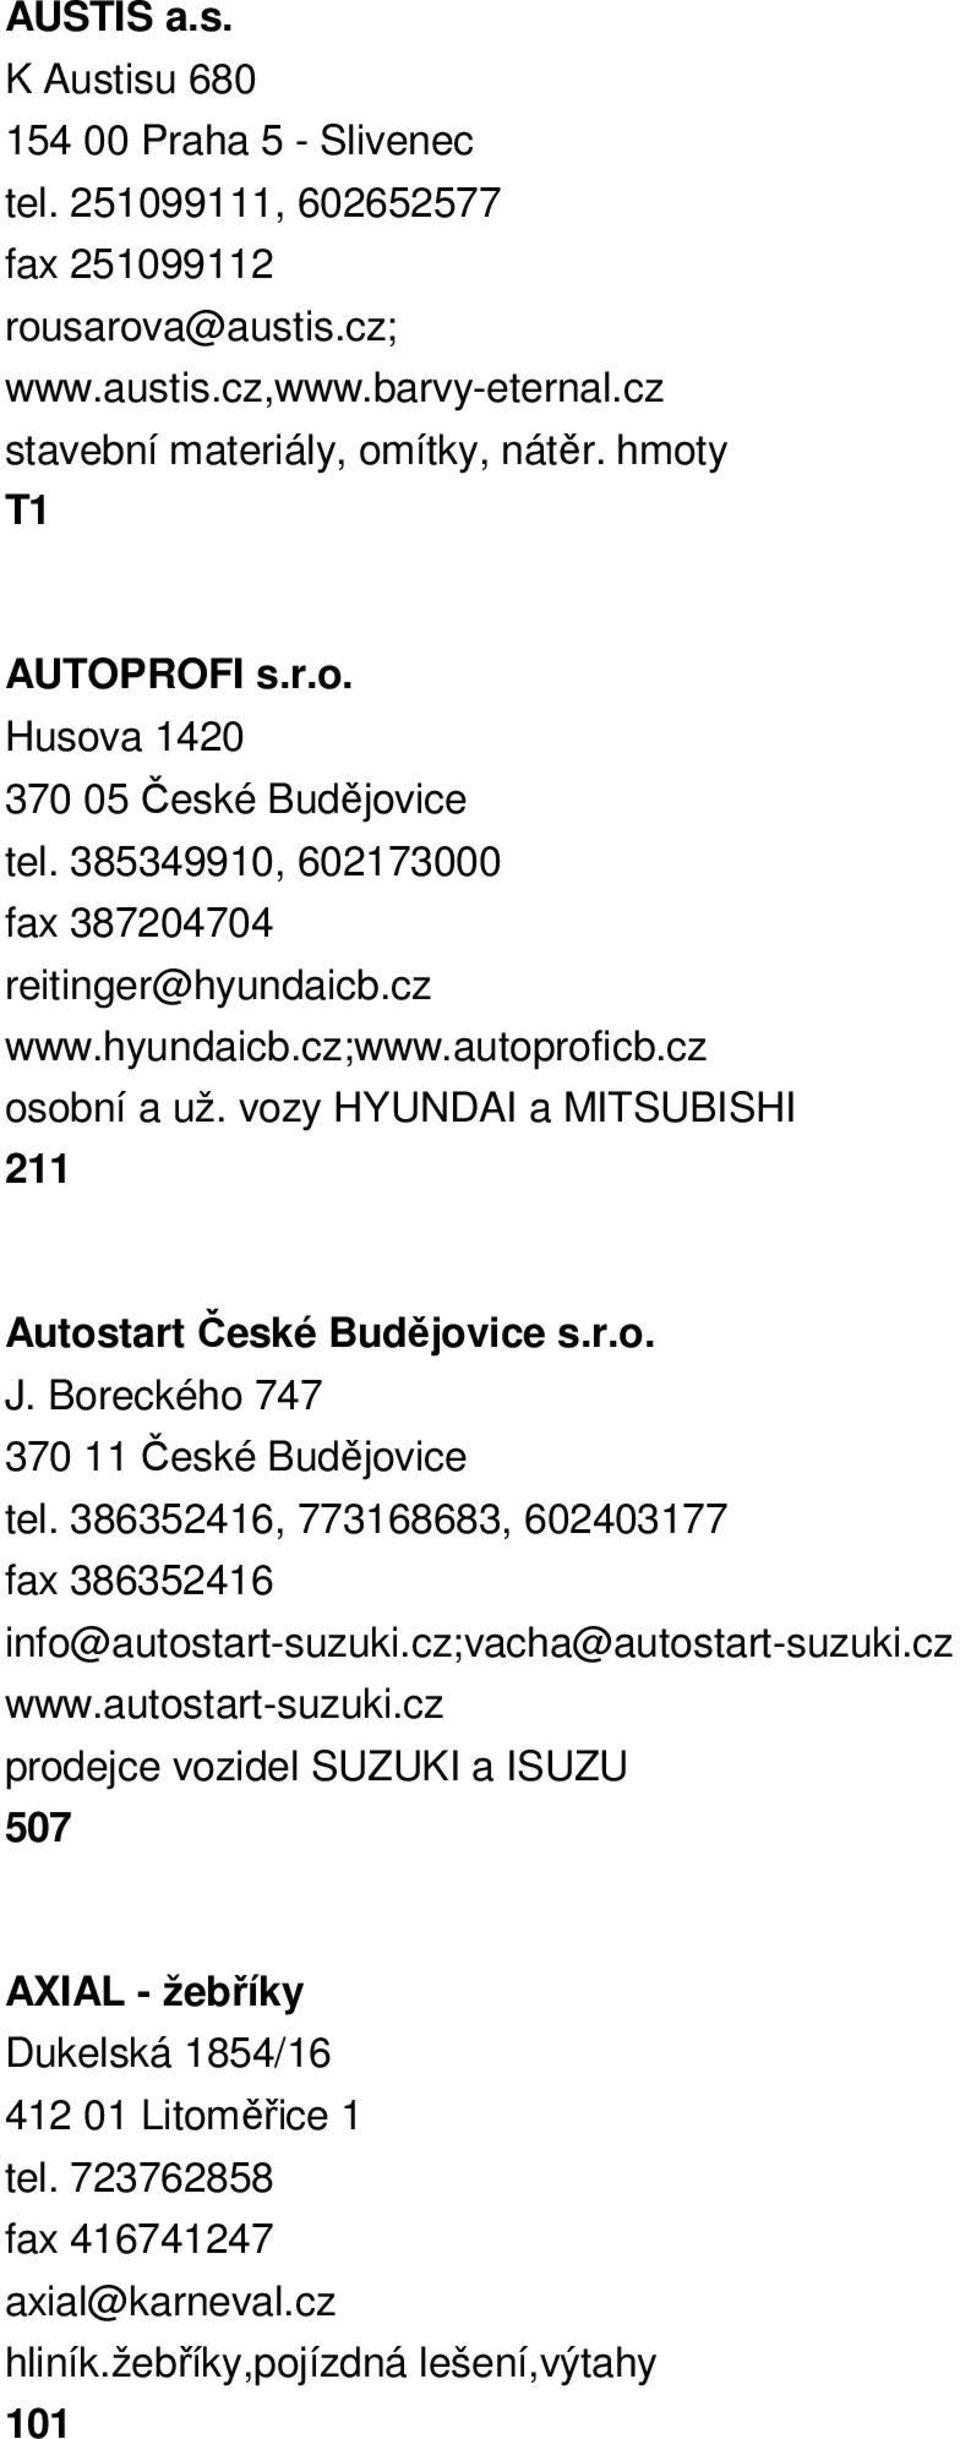 vozy HYUNDAI a MITSUBISHI 211 Autostart České Budějovice s.r.o. J. Boreckého 747 370 11 České Budějovice tel. 386352416, 773168683, 602403177 fax 386352416 info@autostart-suzuki.